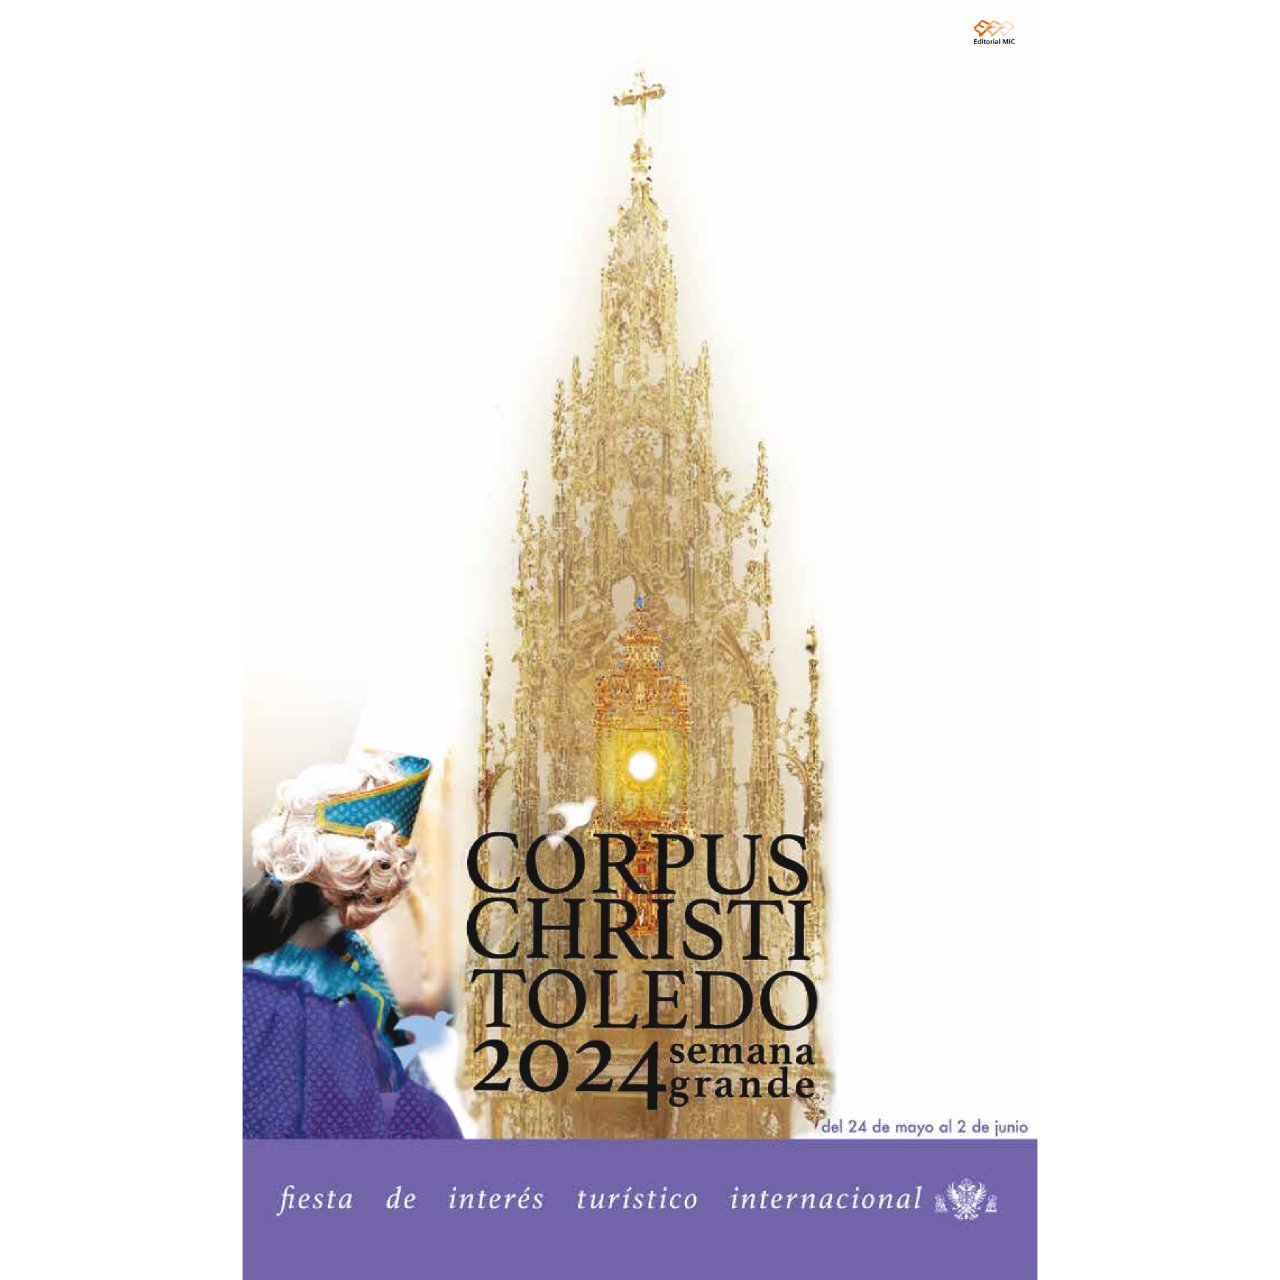 programa de las fiestas del corpus christi de toledo 2024, con conciertos de Taburete y muchas otras propuestas